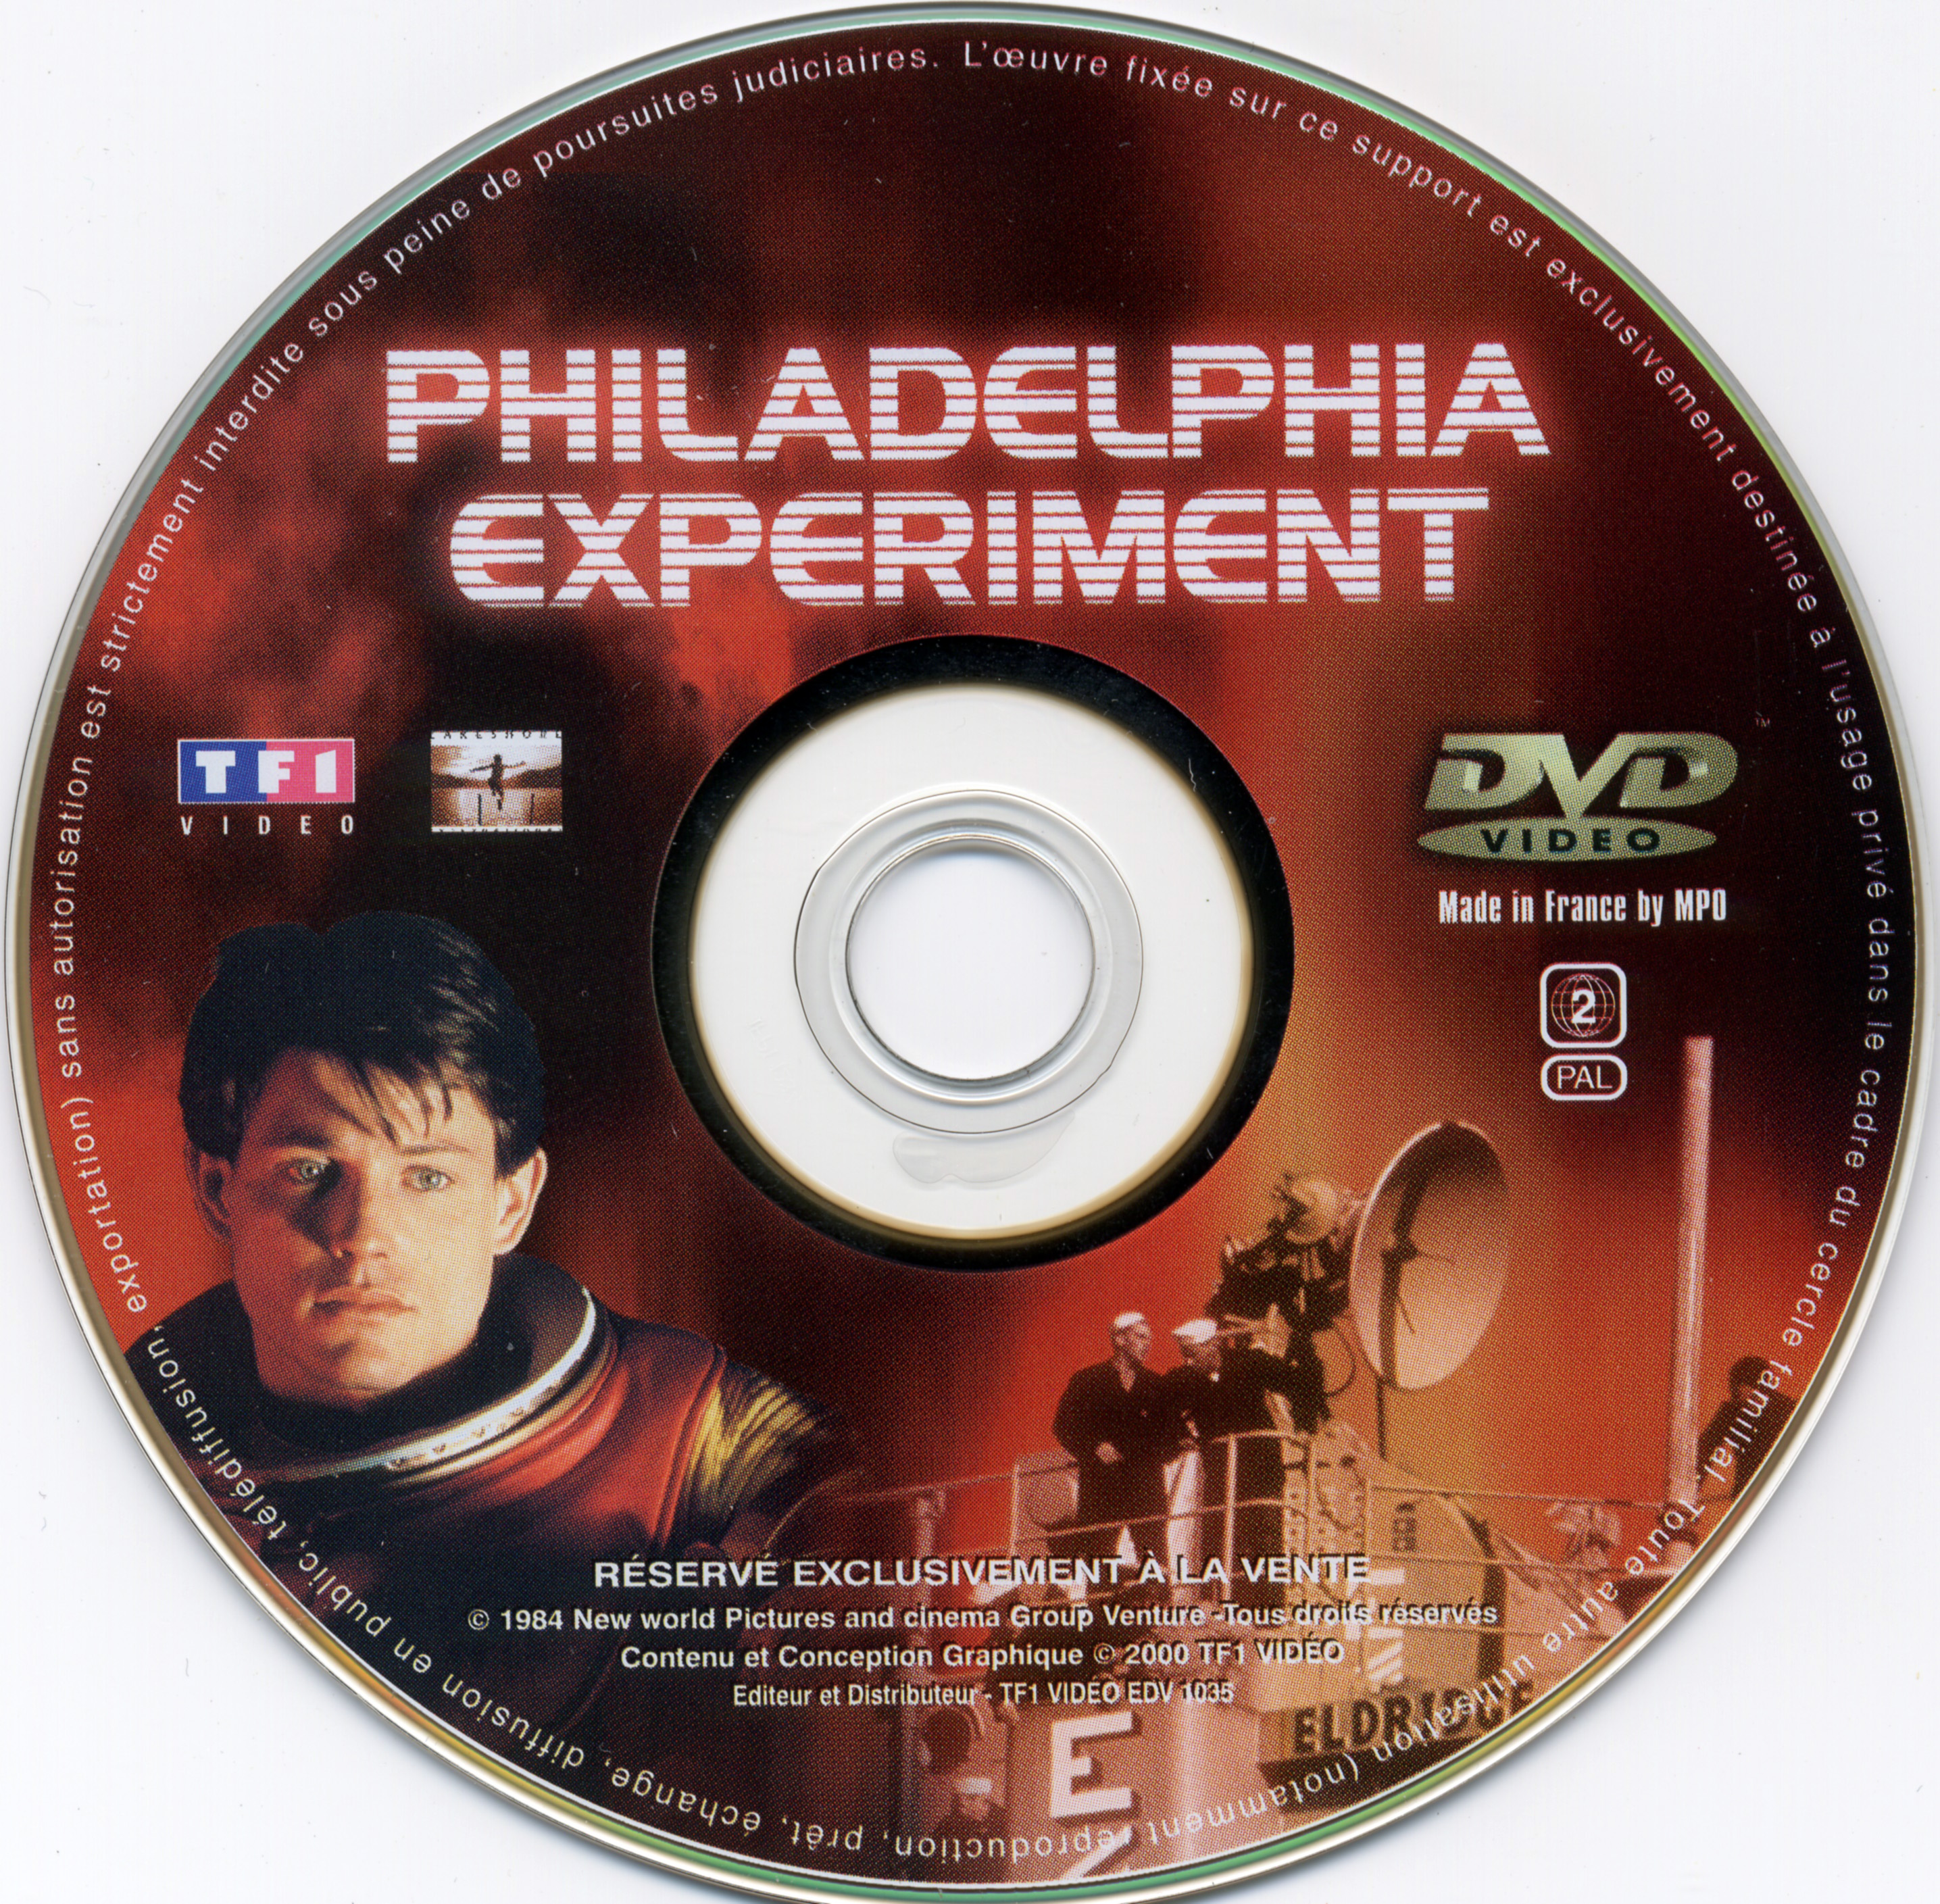 Philadelphia experiment